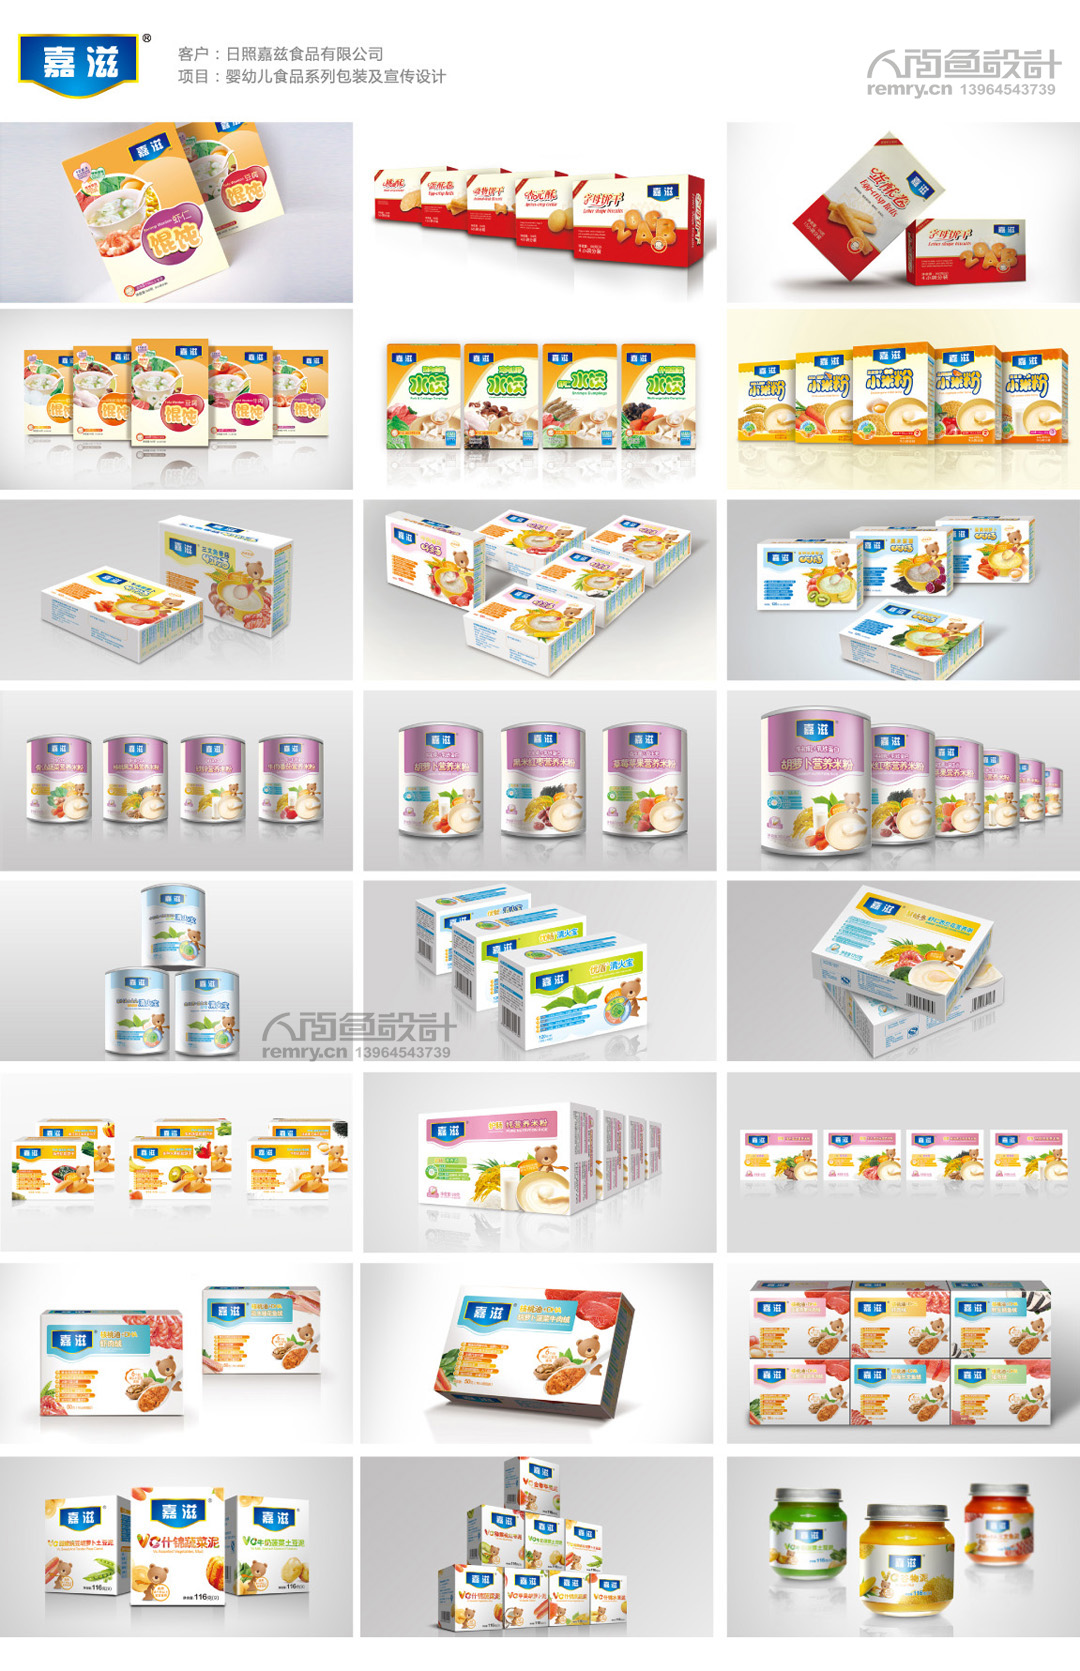 嘉兹食品,婴幼儿食品品牌塑造,婴幼儿食品品牌形象设计,婴幼儿食品产品形象识别系统设计